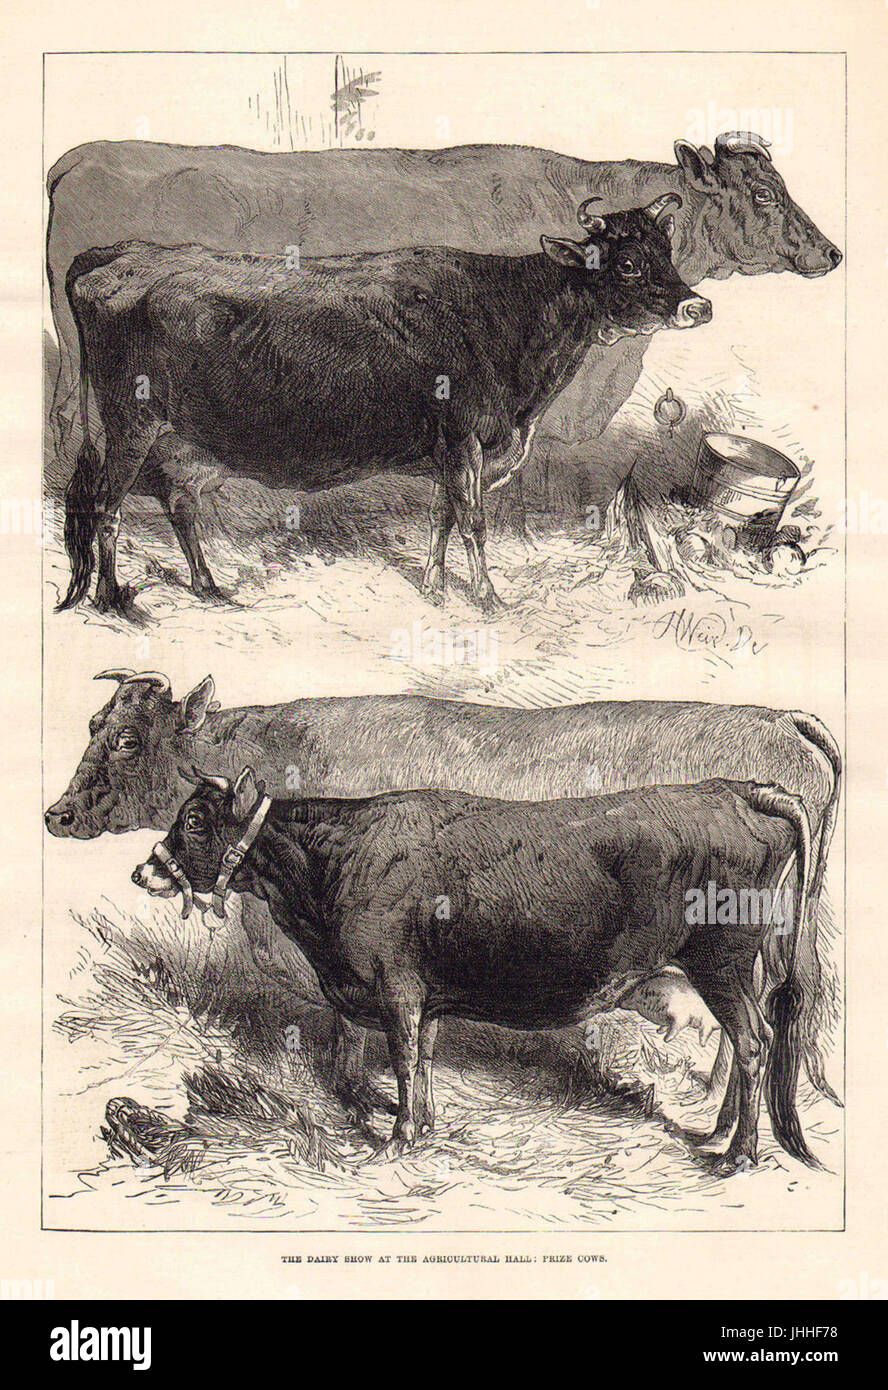 Harrison Weir, le Dairy Show à la salle de l'Agriculture, les vaches du prix ; l'Illustrated London News, 1876 Banque D'Images